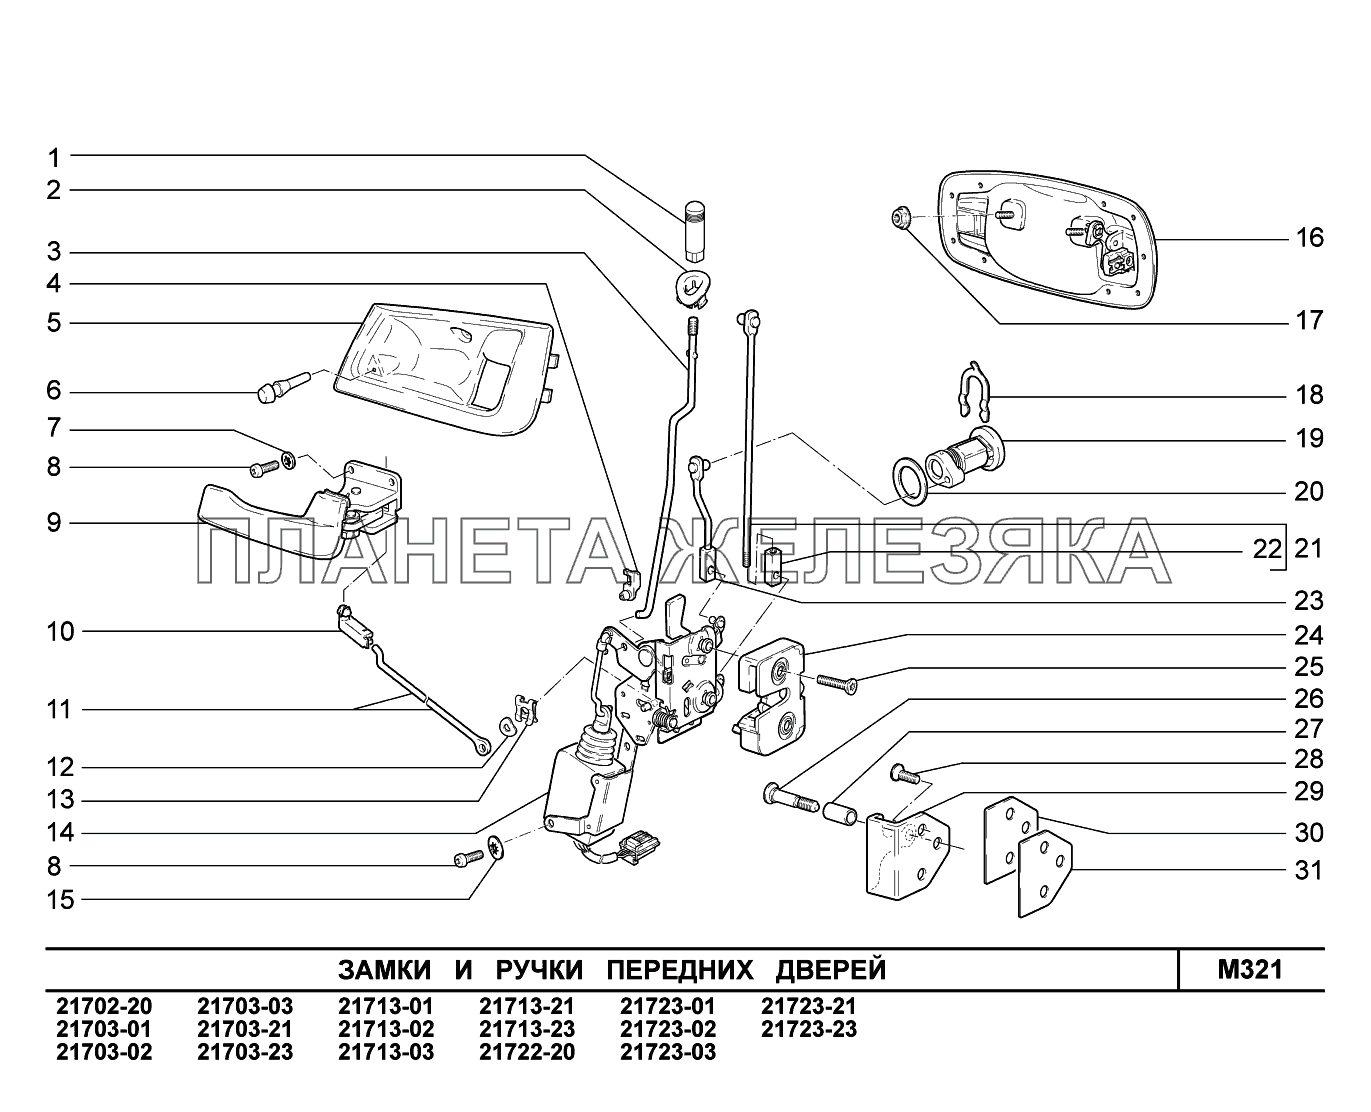 M321. Замки и ручки передних дверей ВАЗ-2170 